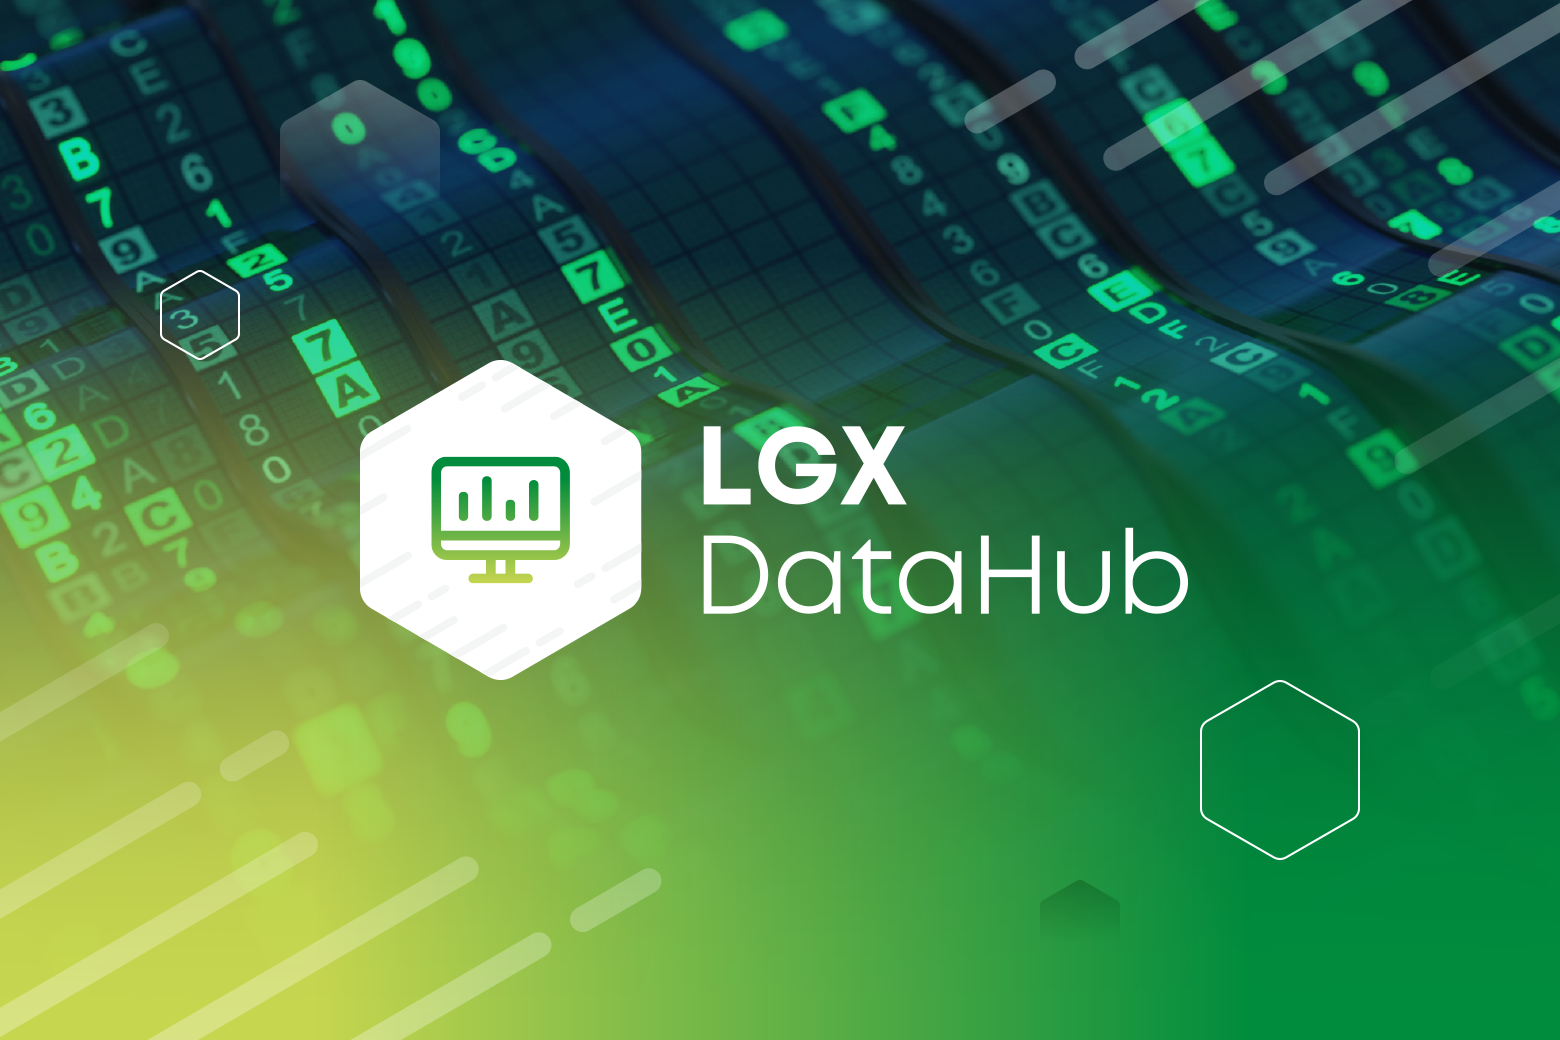 LGX DataHub